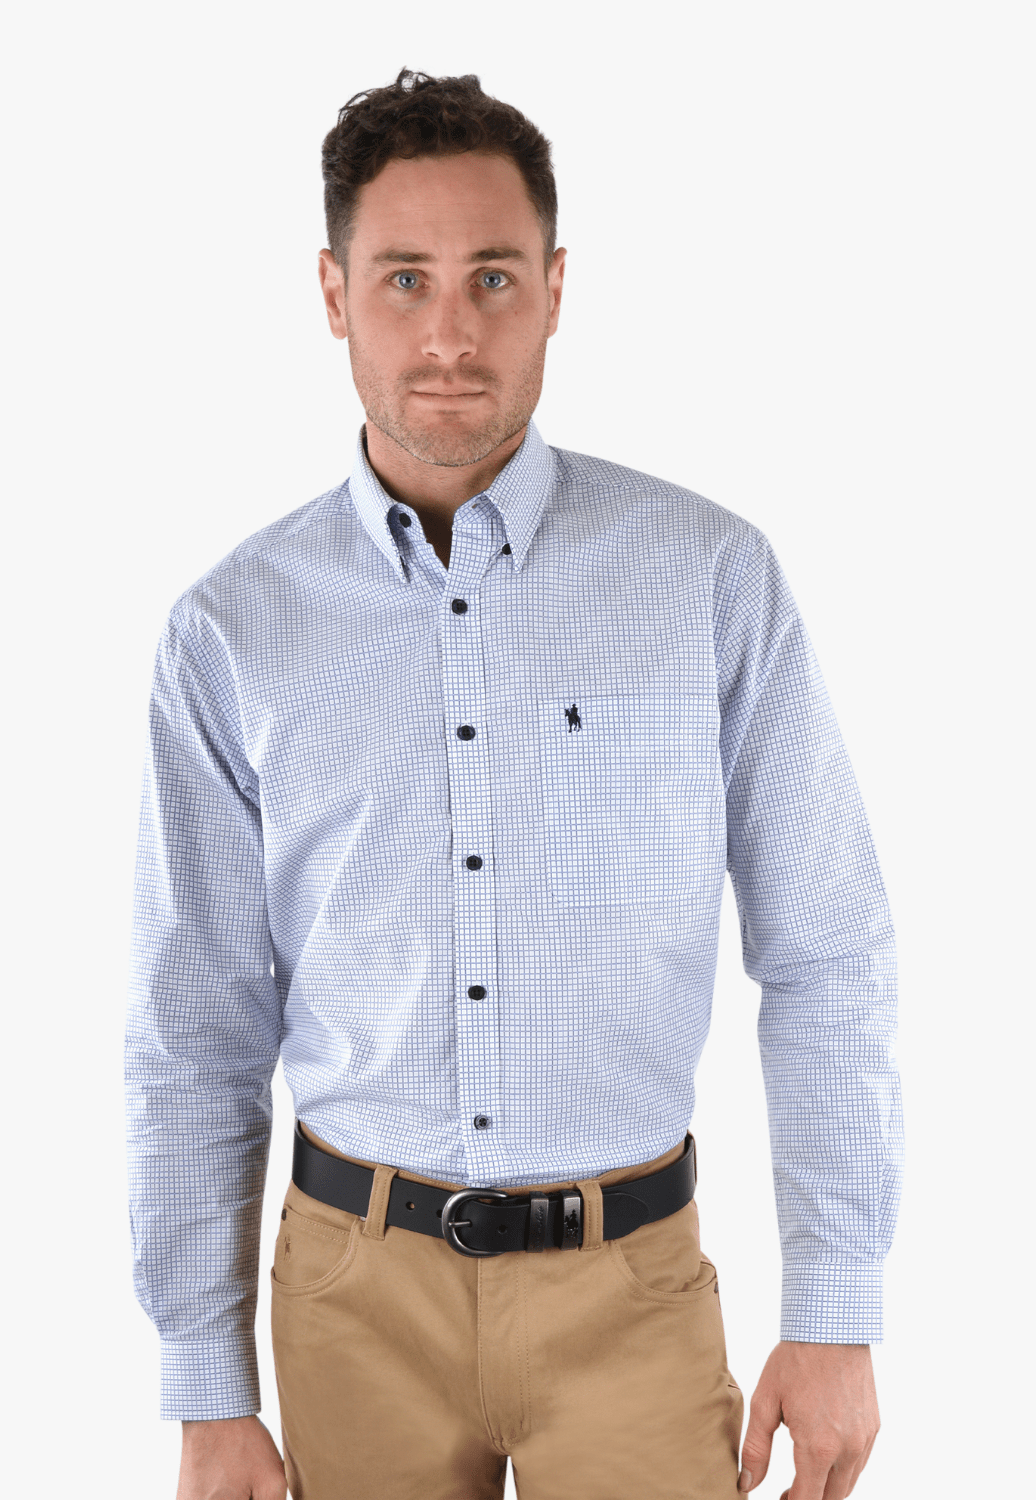 Thomas Cook CLOTHING-Mens Long Sleeve Shirts Thomas Cook Mens Walsh Long Sleeve Shirt